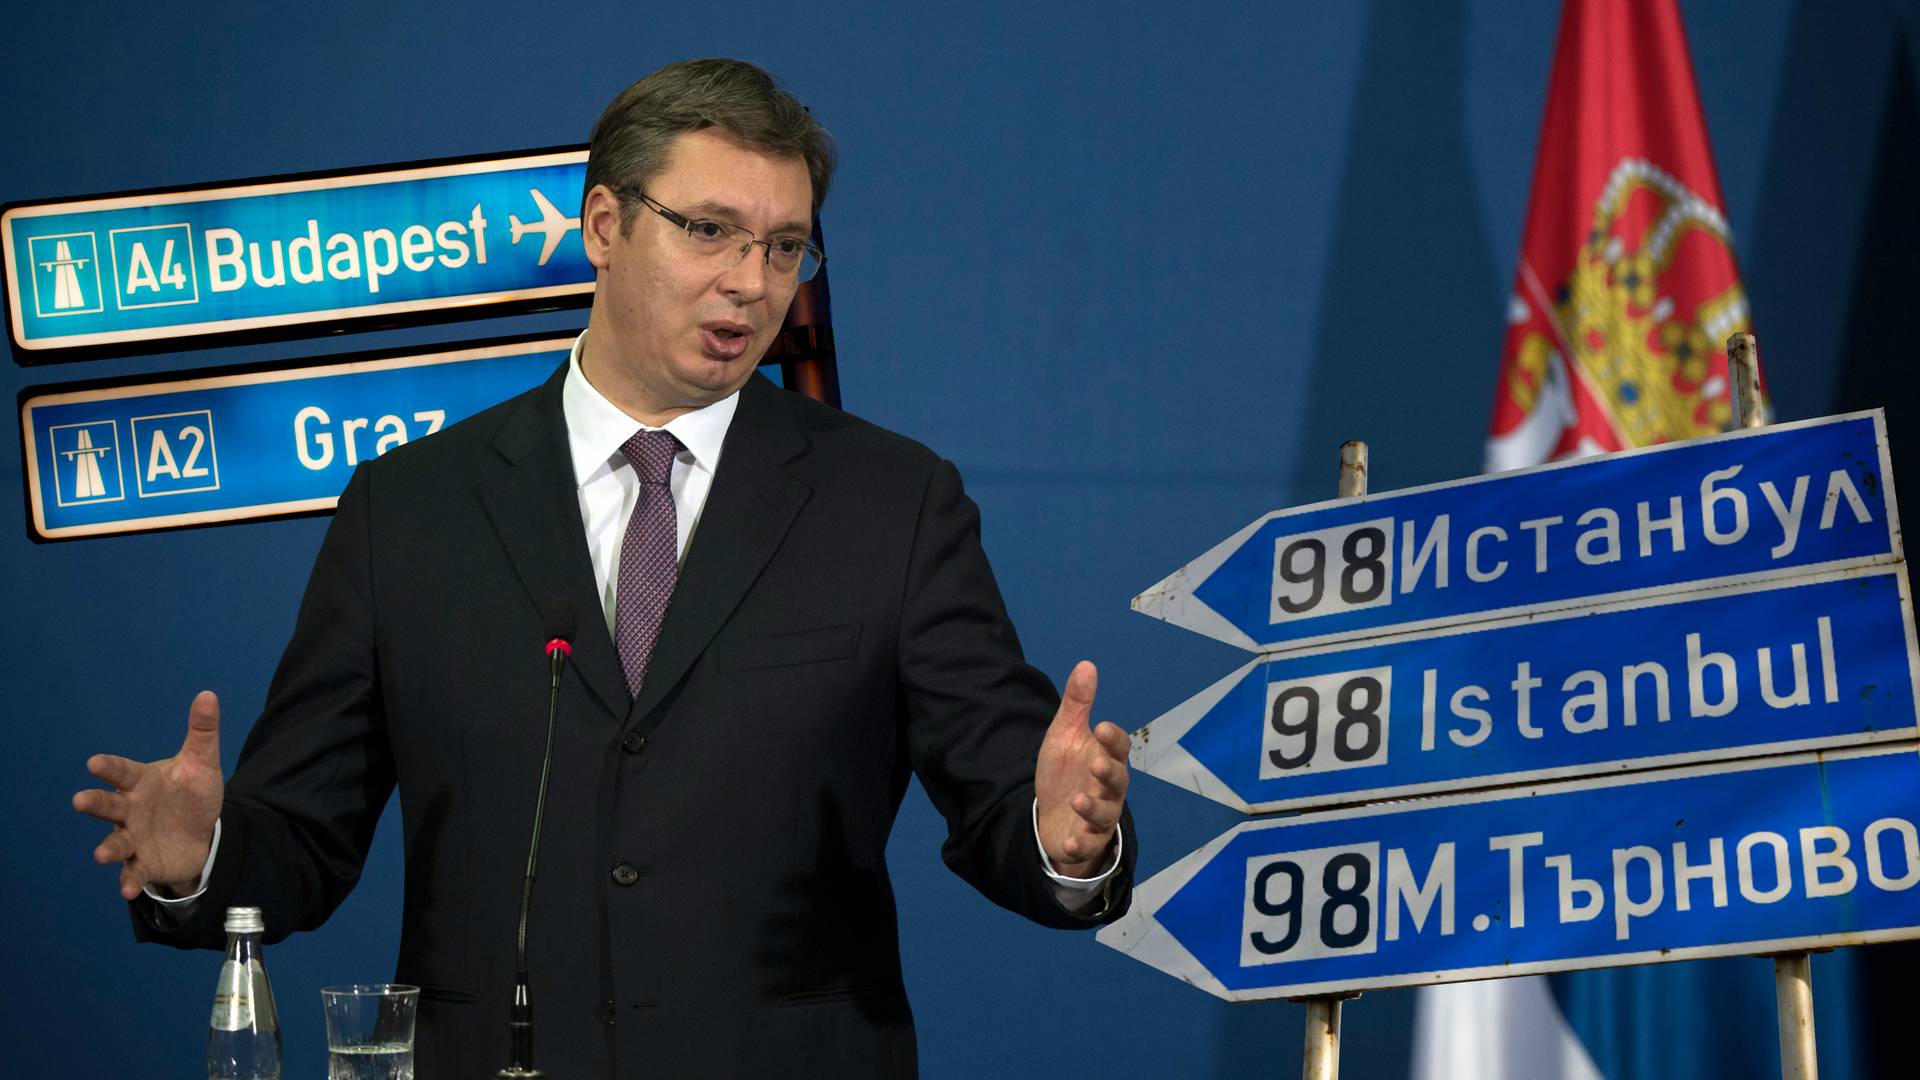 Auto-put kojim Srbija ide u budućnost